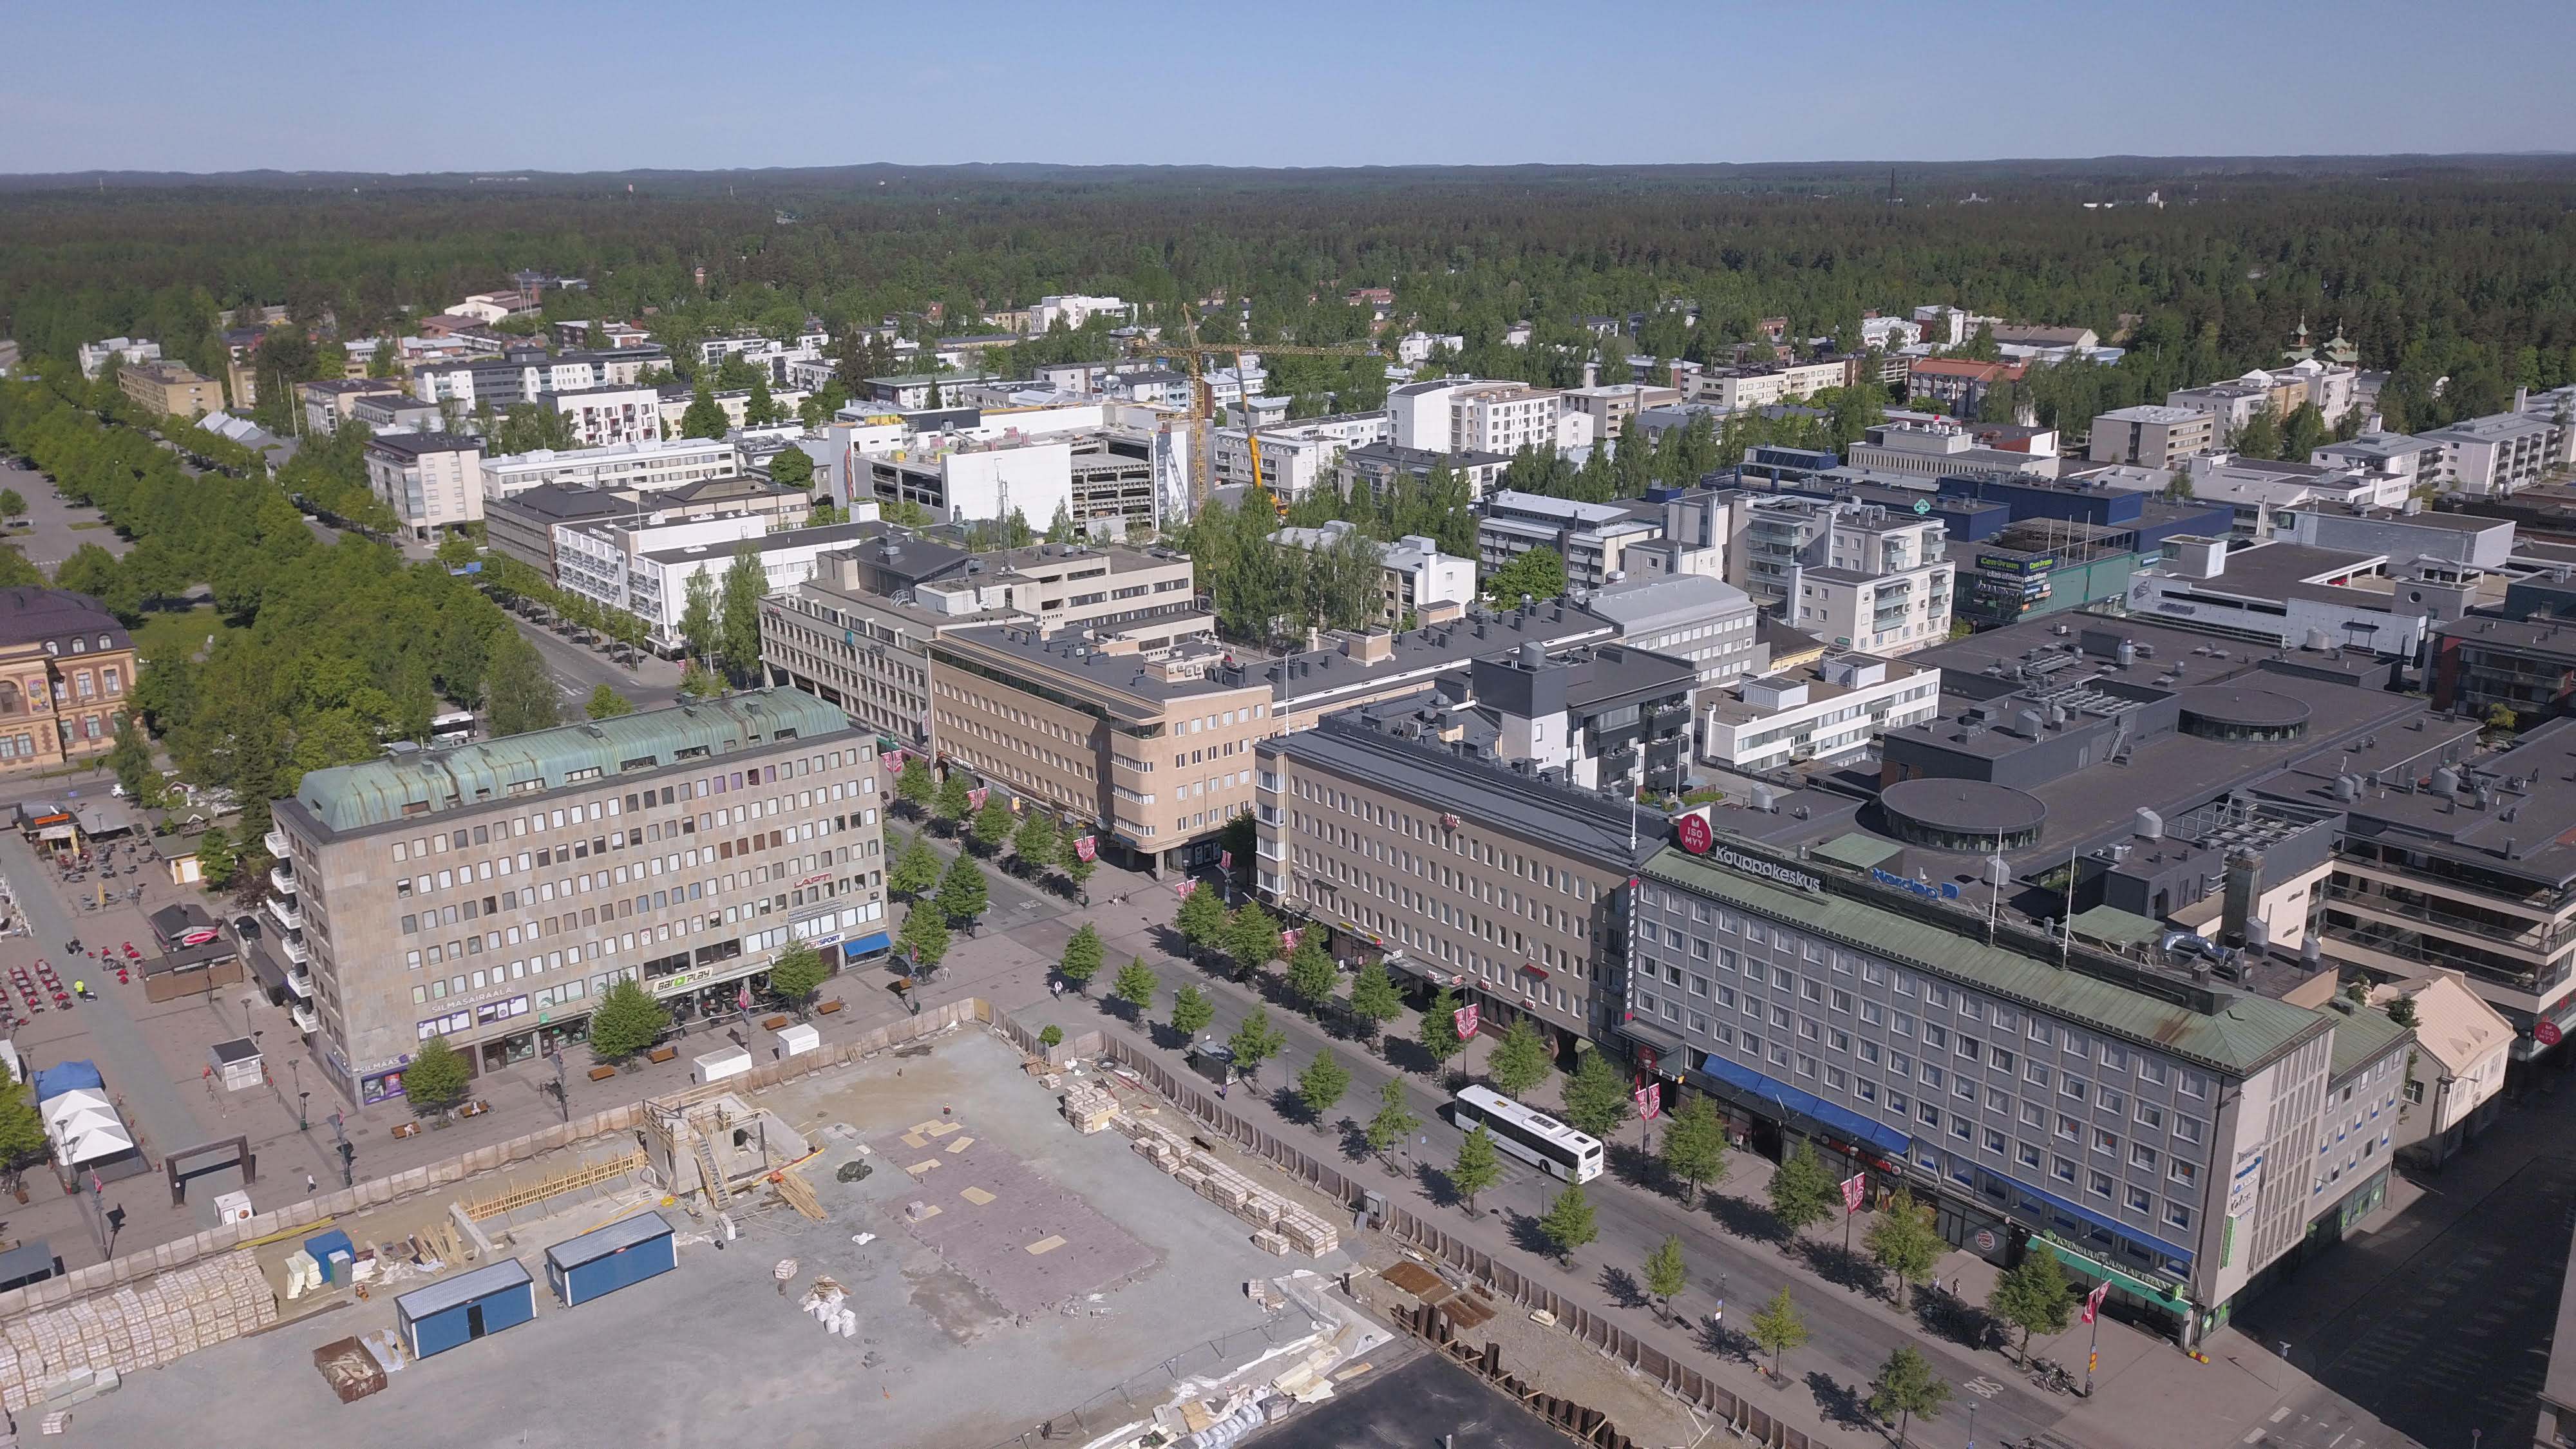 Joensuun liikekeskustaa, taustalla asuinkerrostaloaluetta. Ruutukaavakeskustassa rakentaminen on matalaa ja lehtipuuistutukset runsaita. Kuva: Maija Hakala.